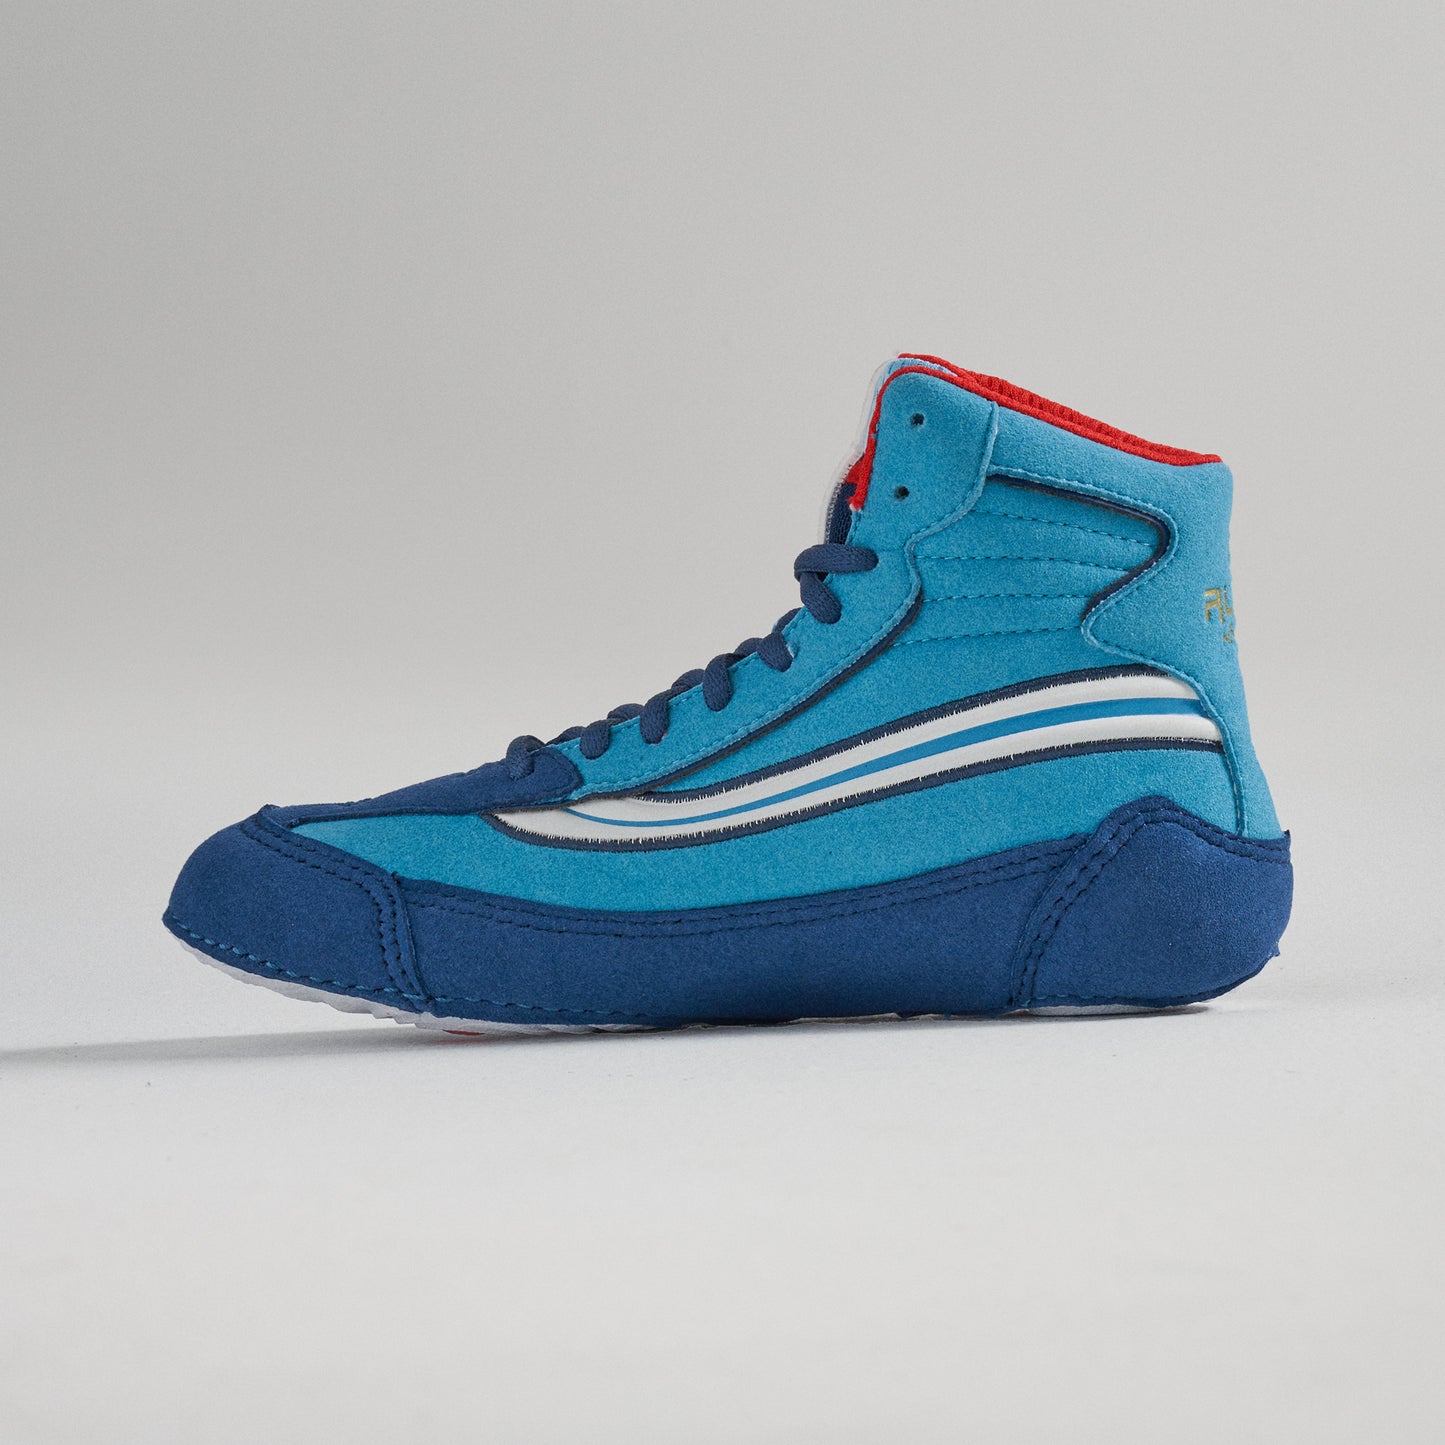 RUDIS Ninety-5 Youth Wrestling Shoes - Blue